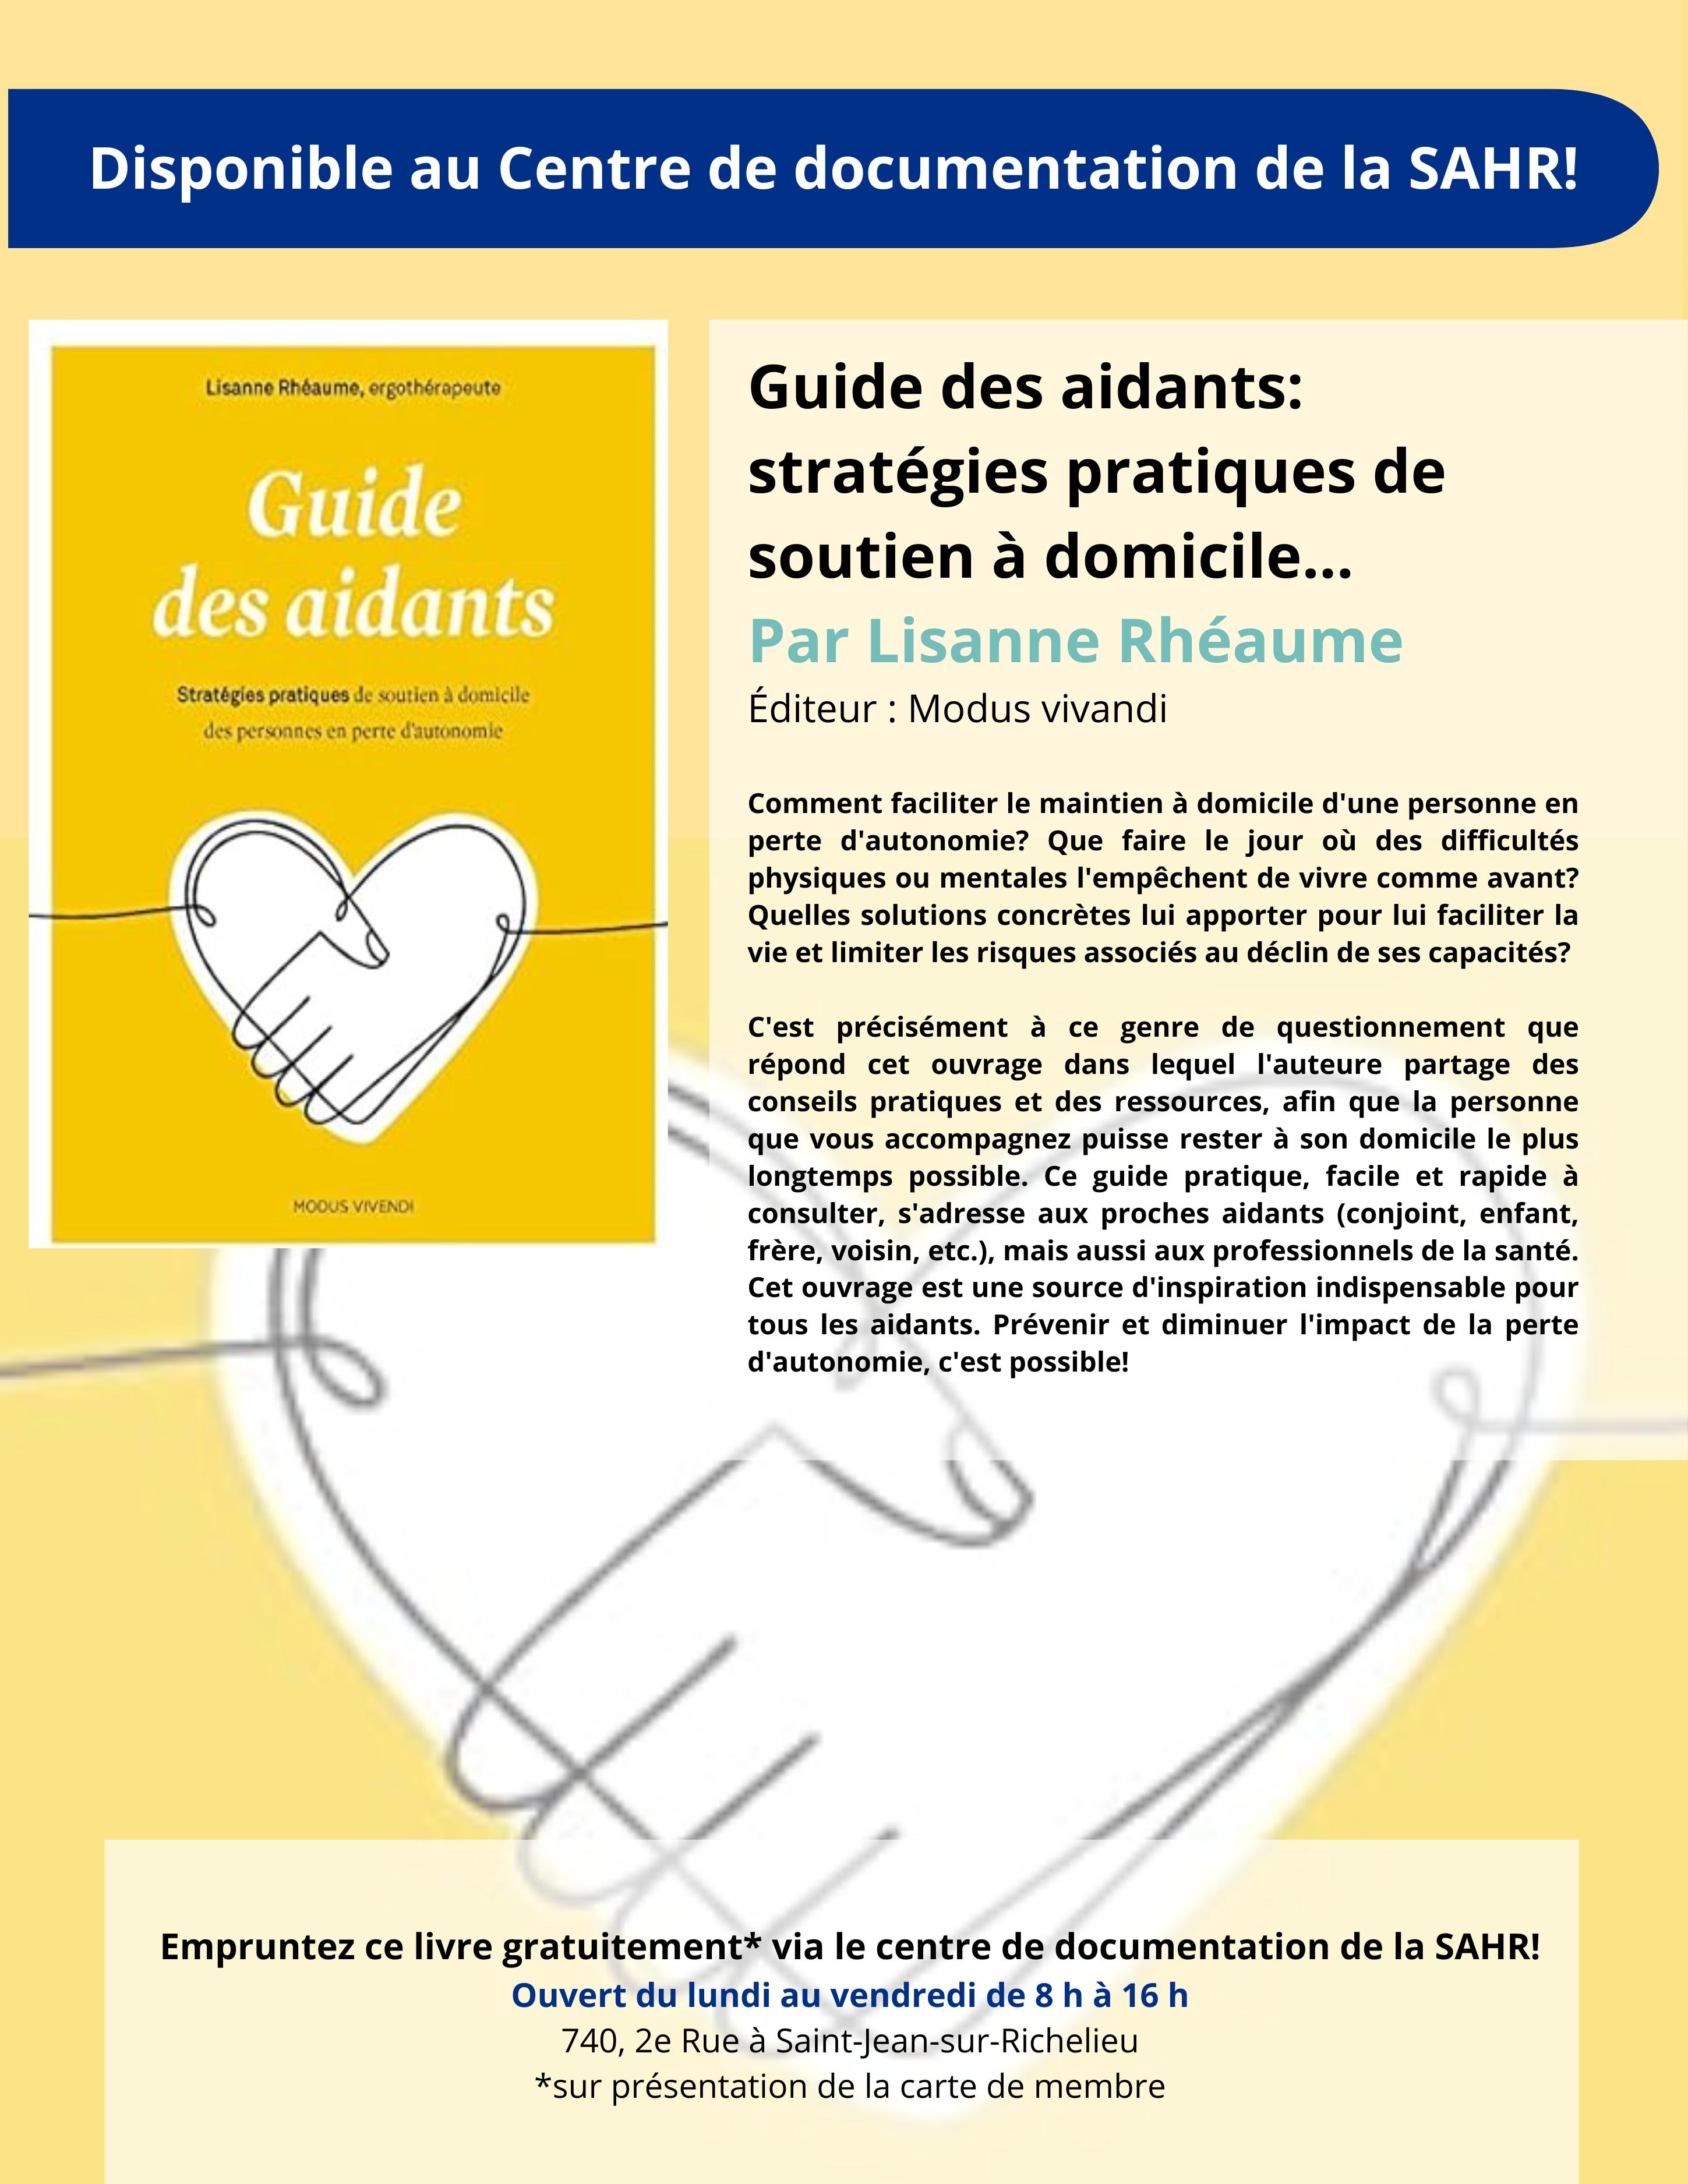 Guide des aidants: stratégies pratiques de soutien à domicile... Par Lisanne Rhéaume